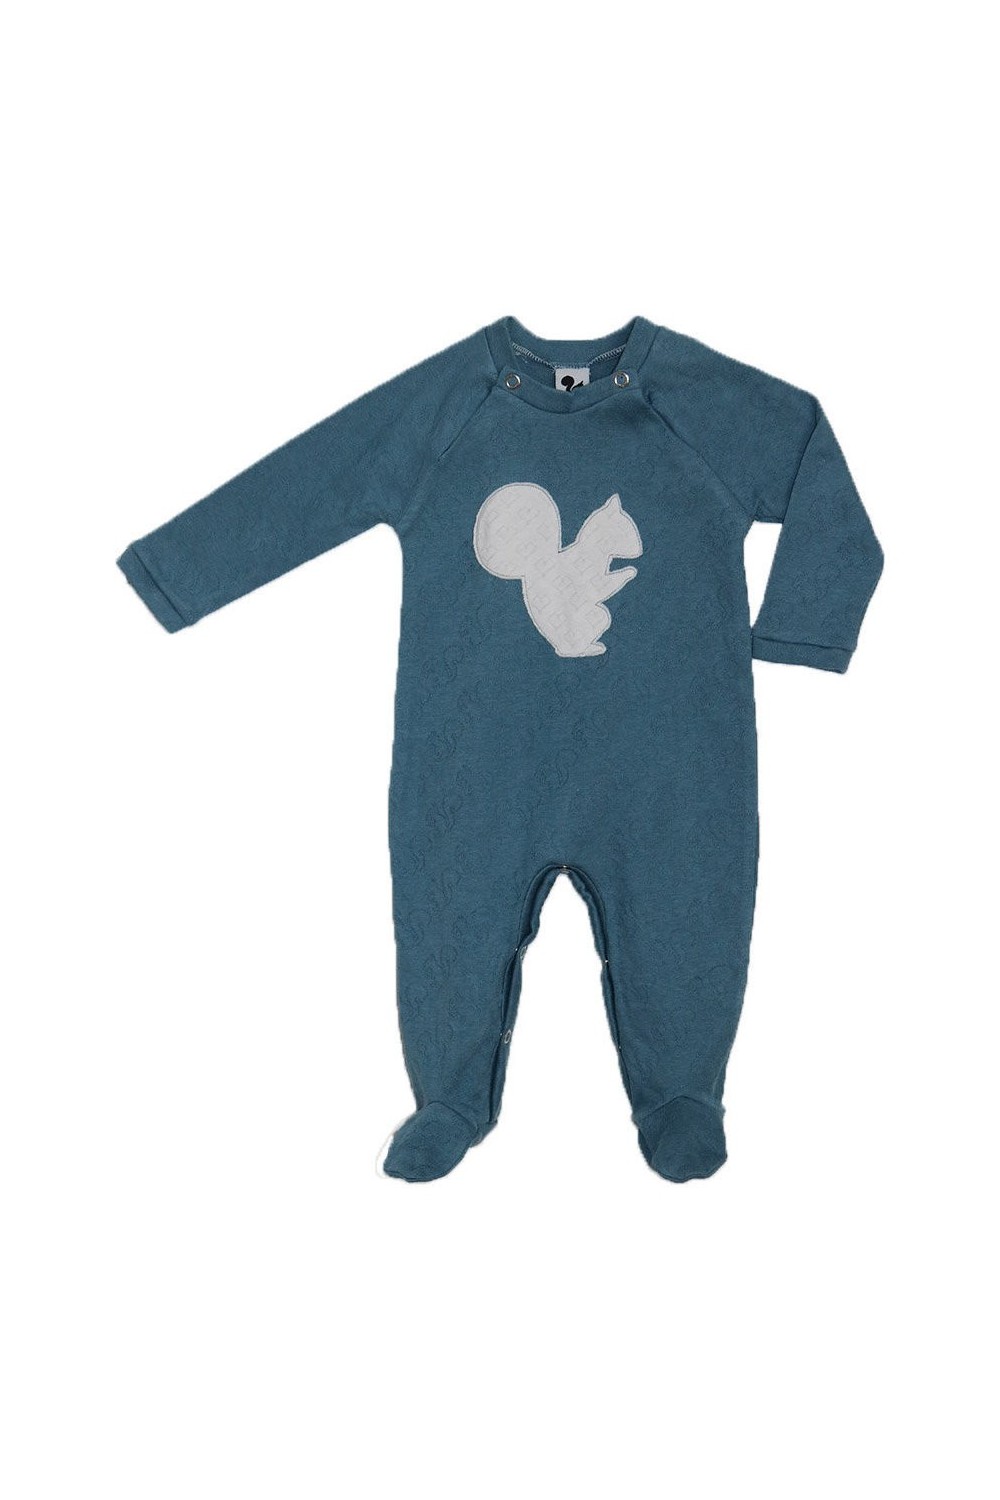 pyjama bébé acrobate risu risu coton bio